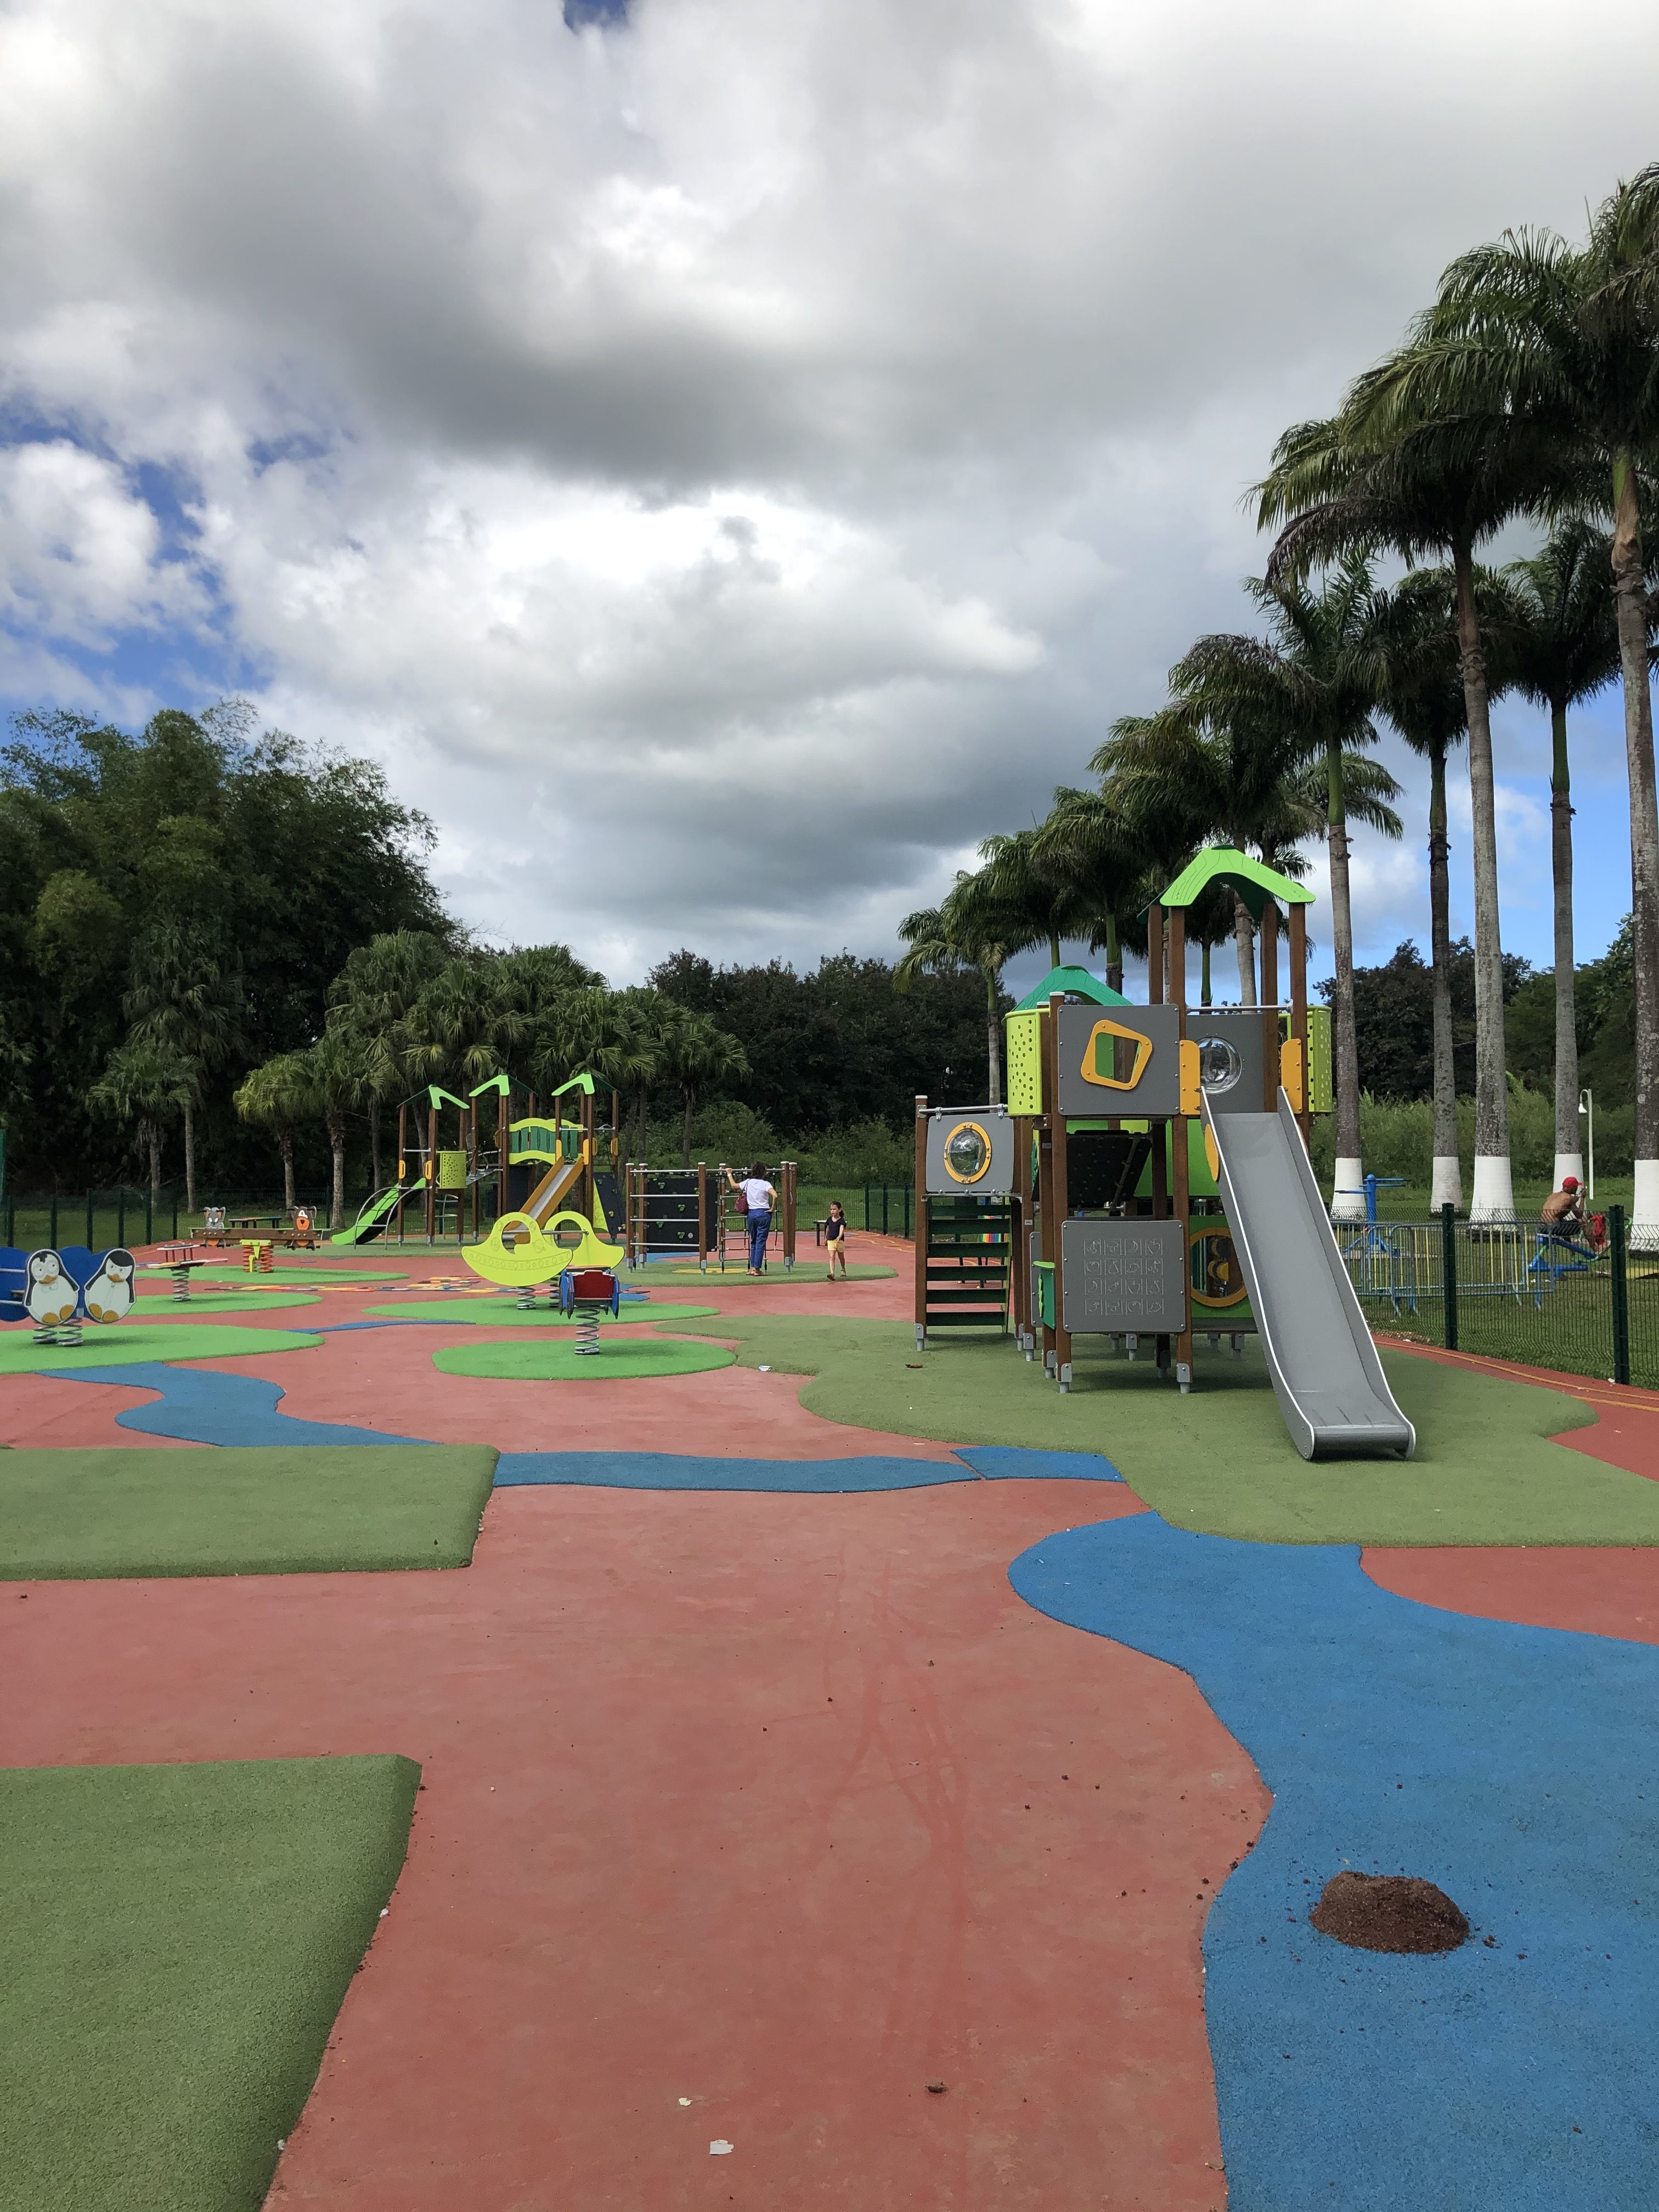 LAMENTIN - NOUVEAU: Le parc pour enfant du Lamentin  Aire de jeux